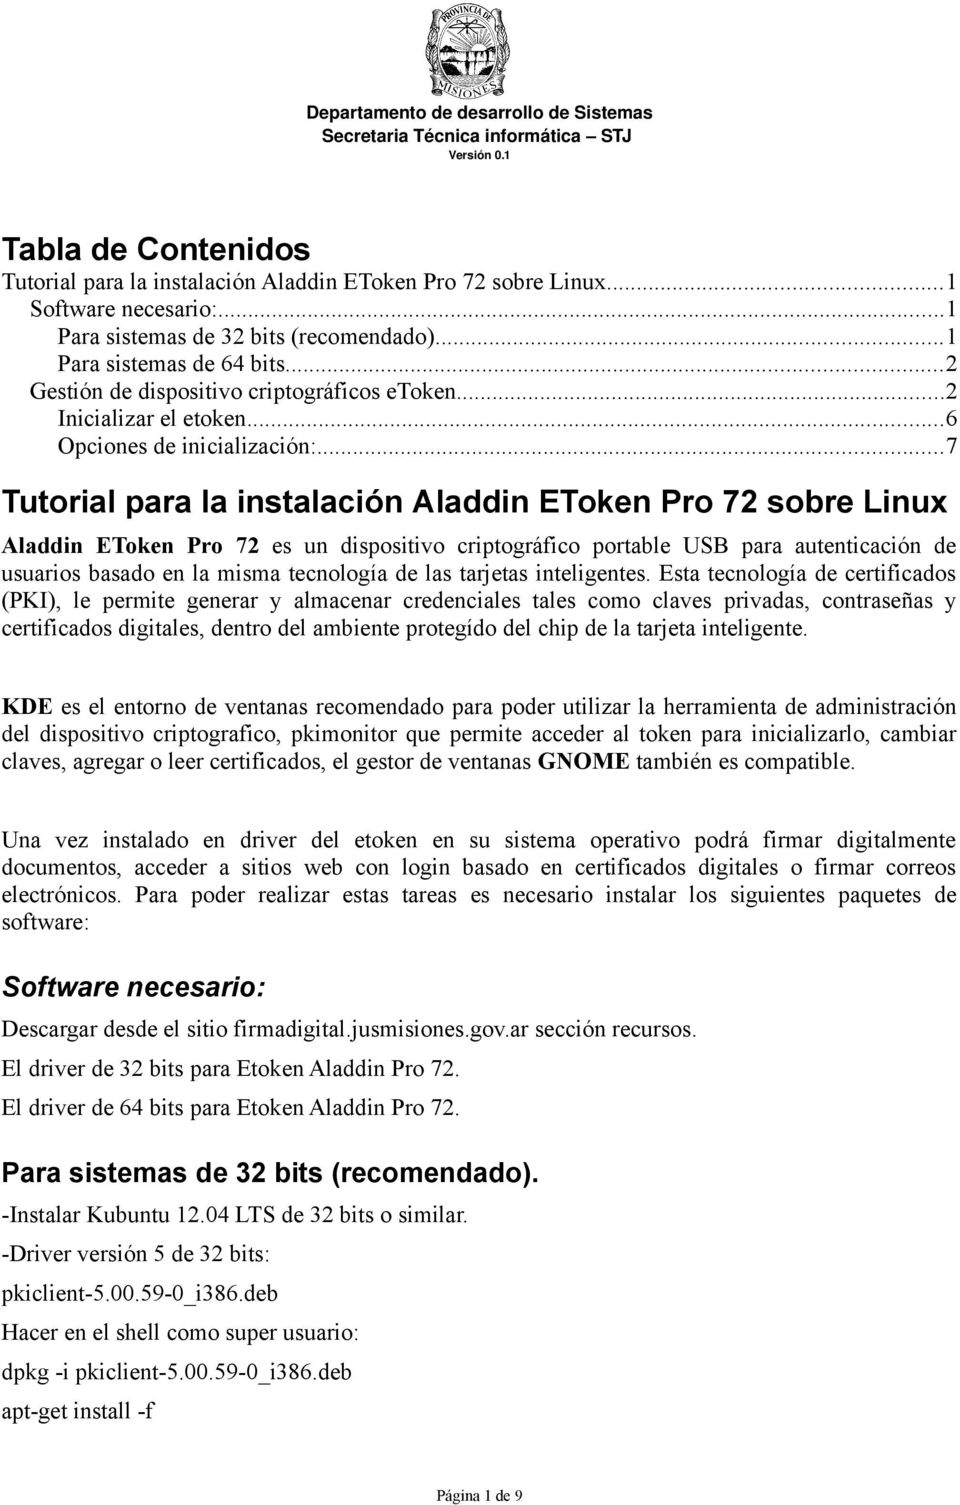 ..7 Tutorial para la instalación Aladdin EToken Pro 72 sobre Linux Aladdin EToken Pro 72 es un dispositivo criptográfico portable USB para autenticación de usuarios basado en la misma tecnología de